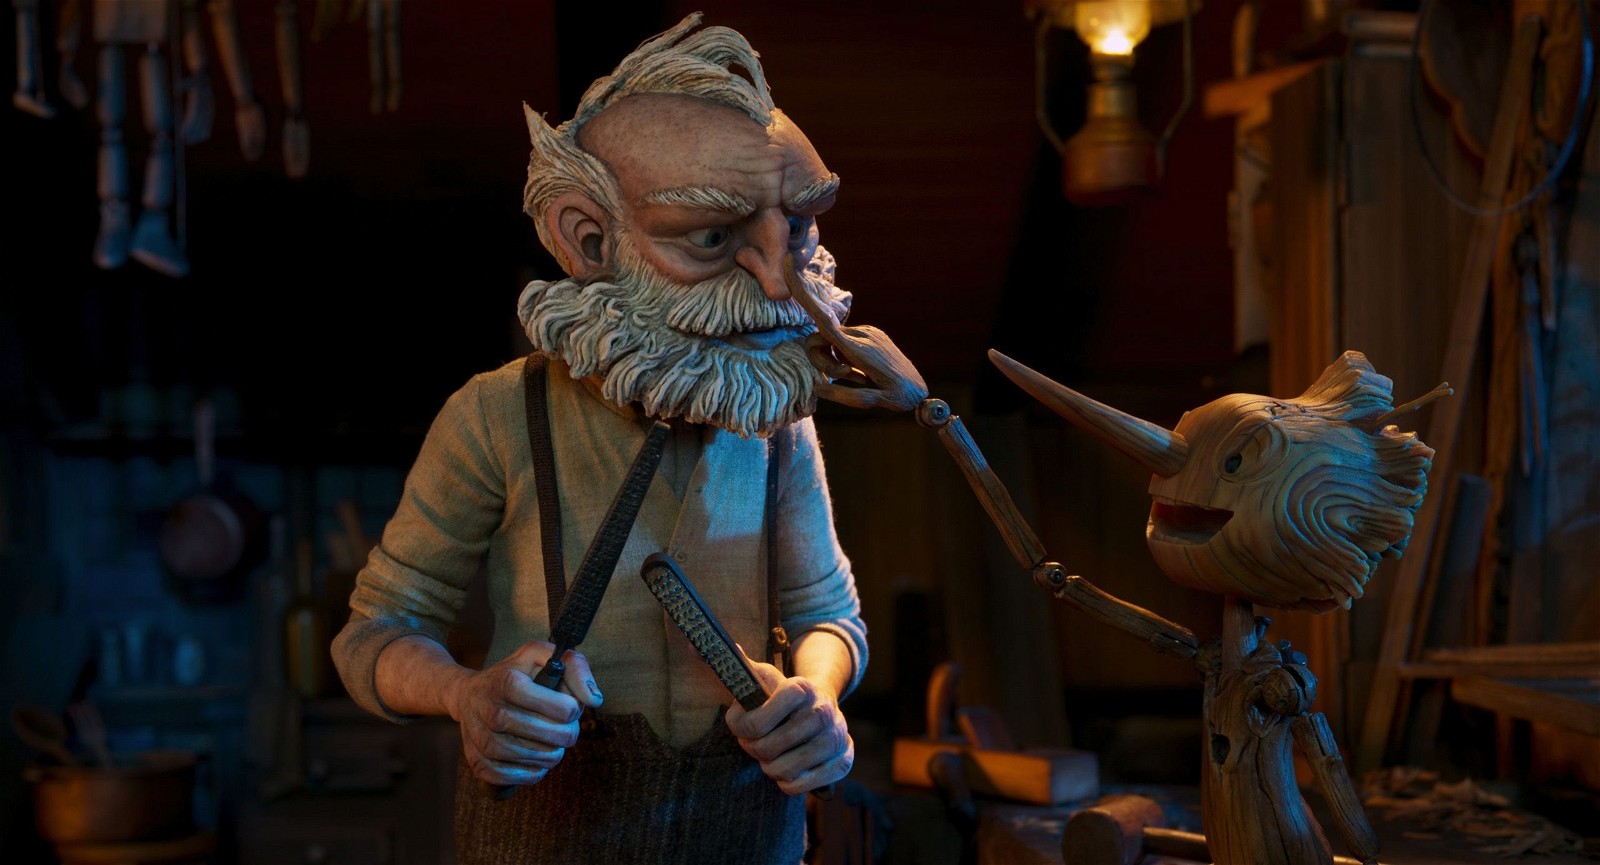 Guillermo del Toro’s Oscar-winning film Pinocchio